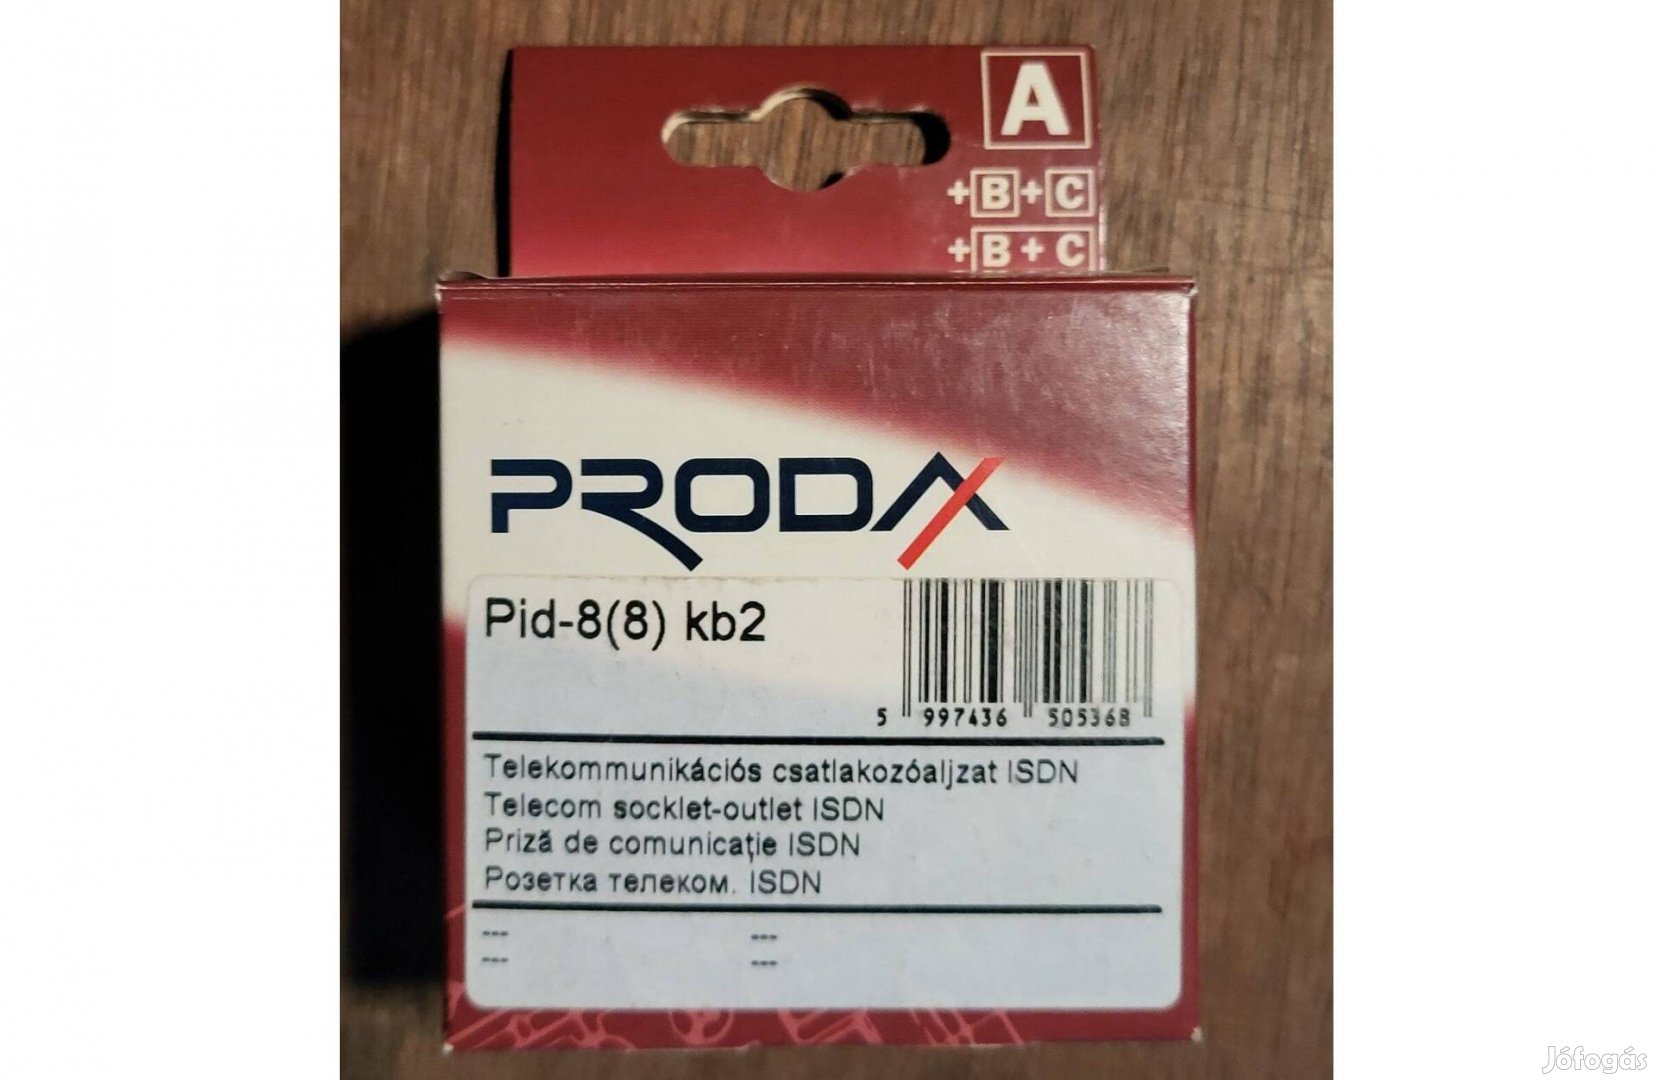 Prodax Pid 8/8 kb2 -es Telekommunikációs csatlakozó aljzat!